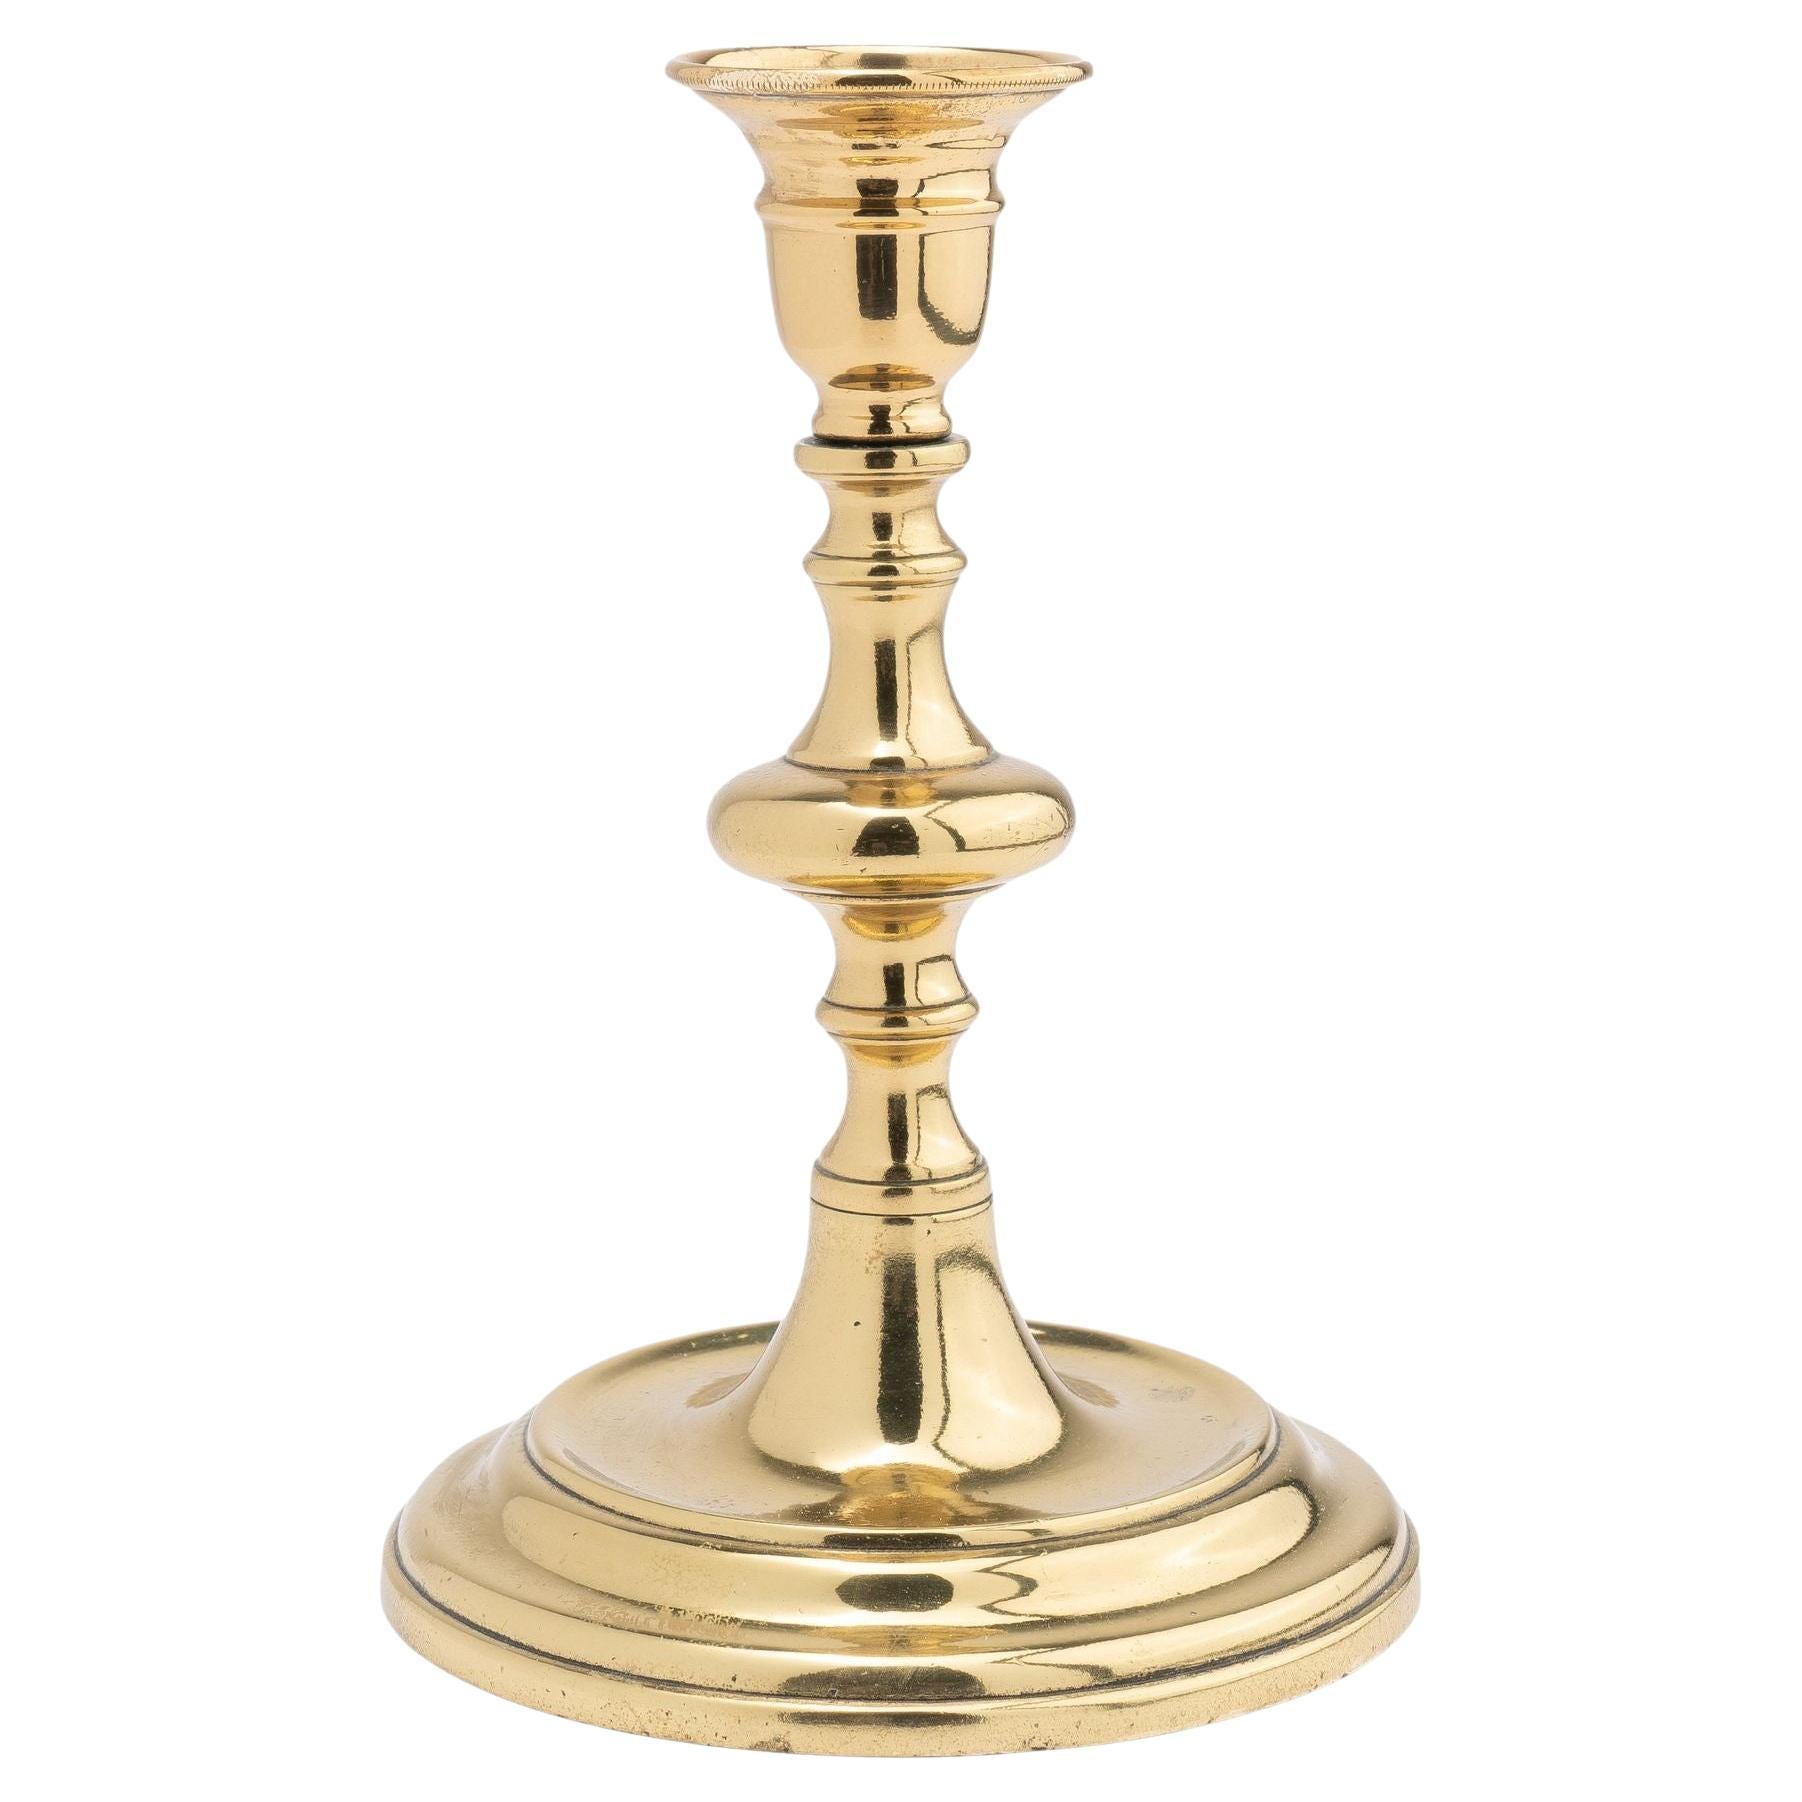 Continental cast brass circular base candlestick, 1720-40